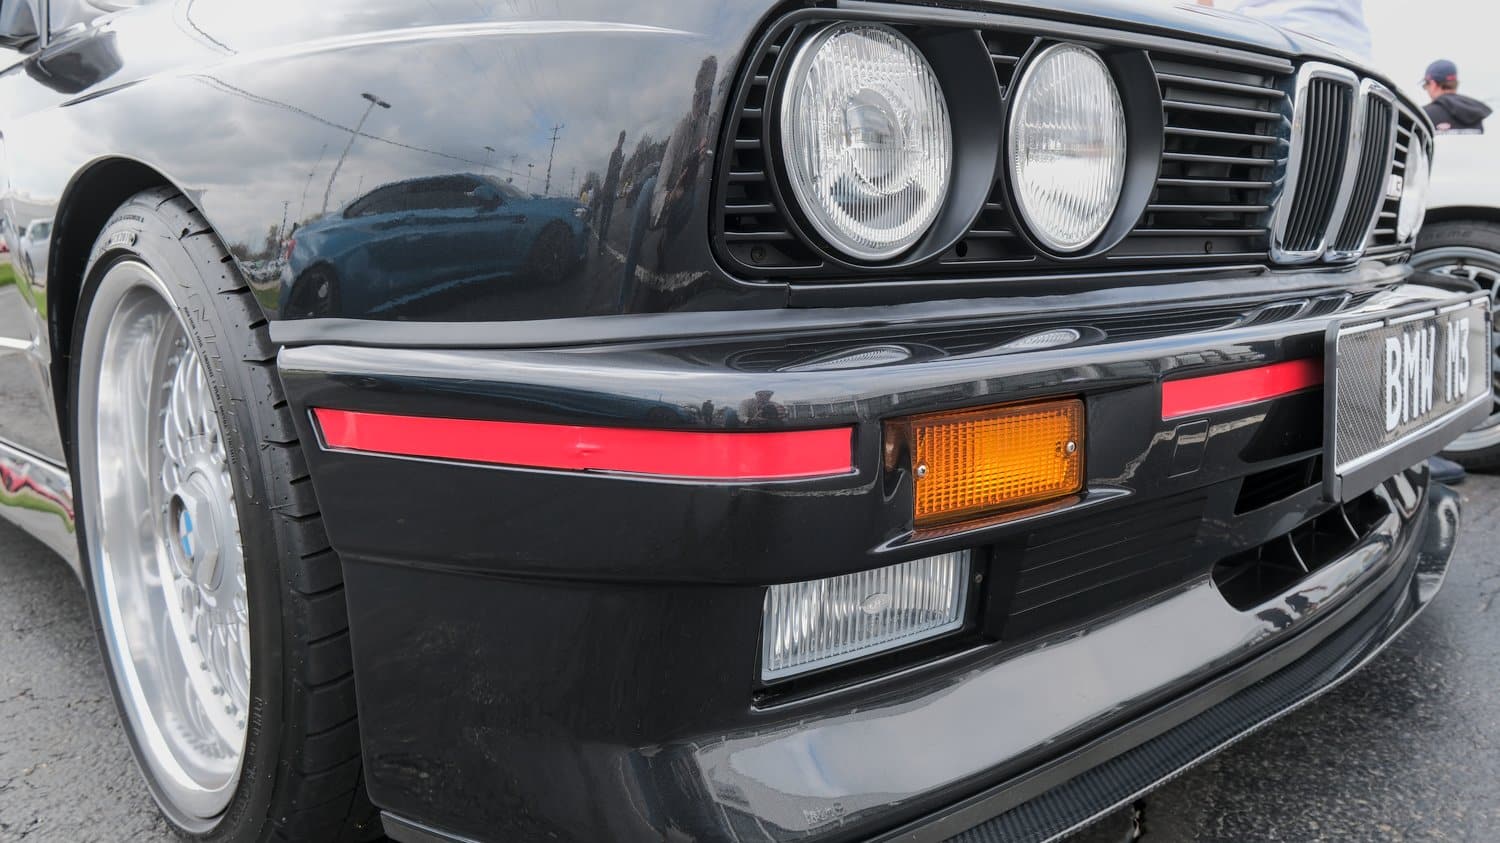 Round headlights on an older BMW M3.